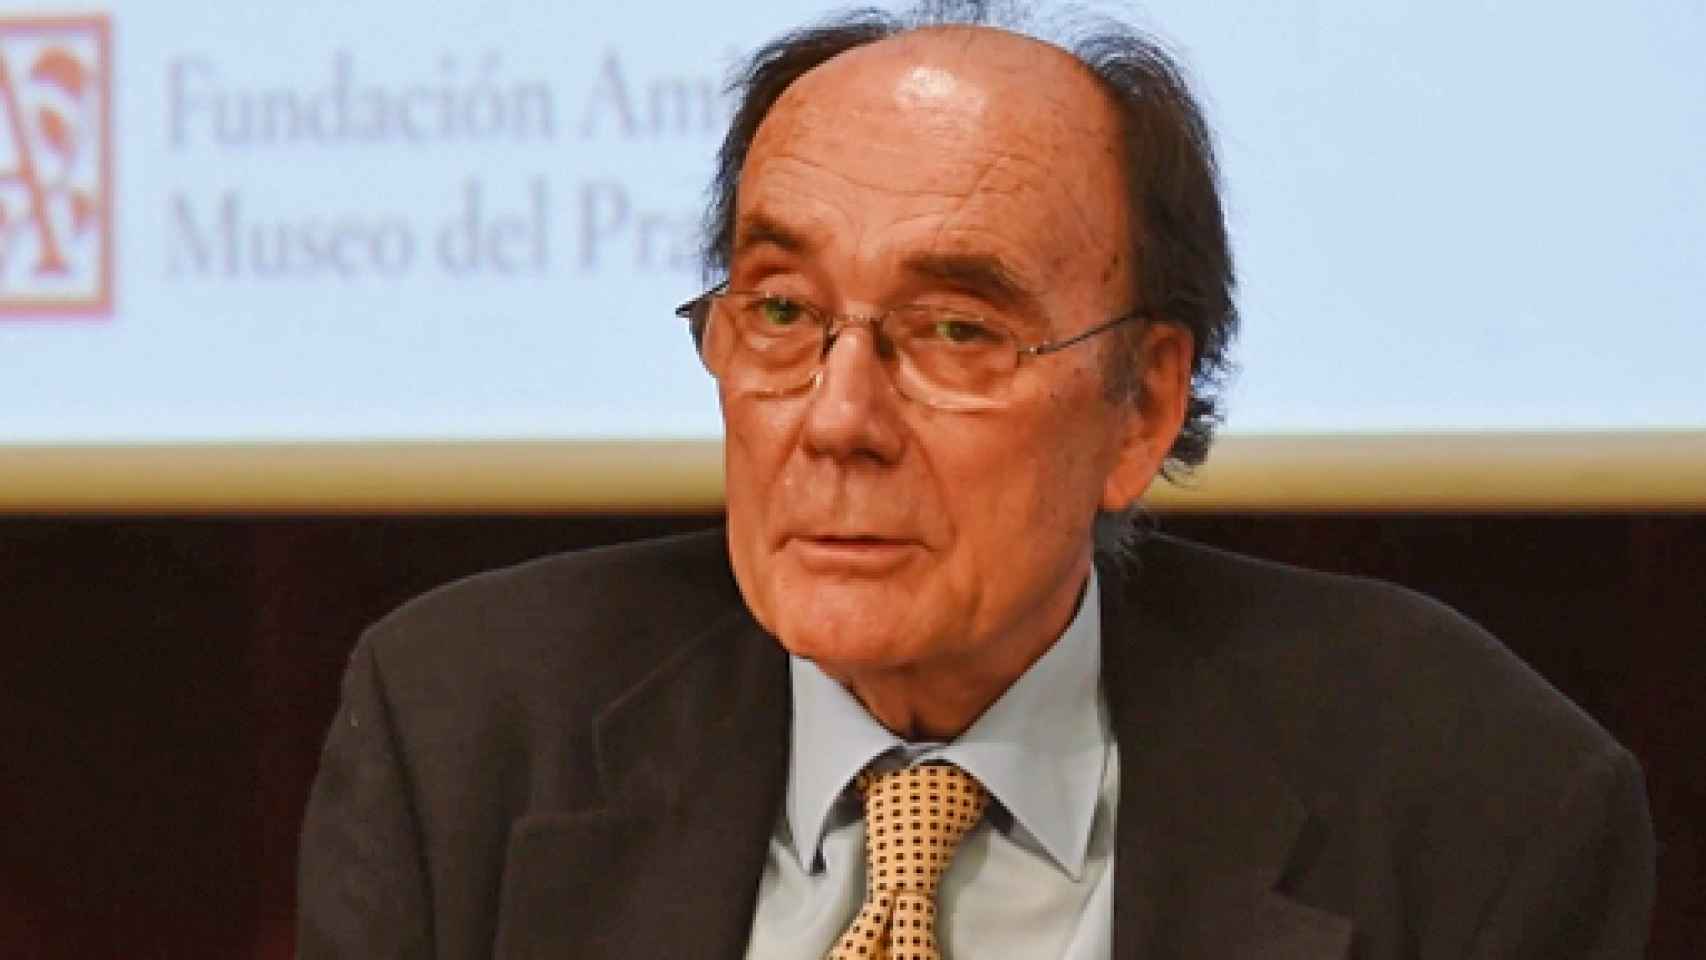 Image: Muere el crítico y catedrático Francisco Calvo Serraller